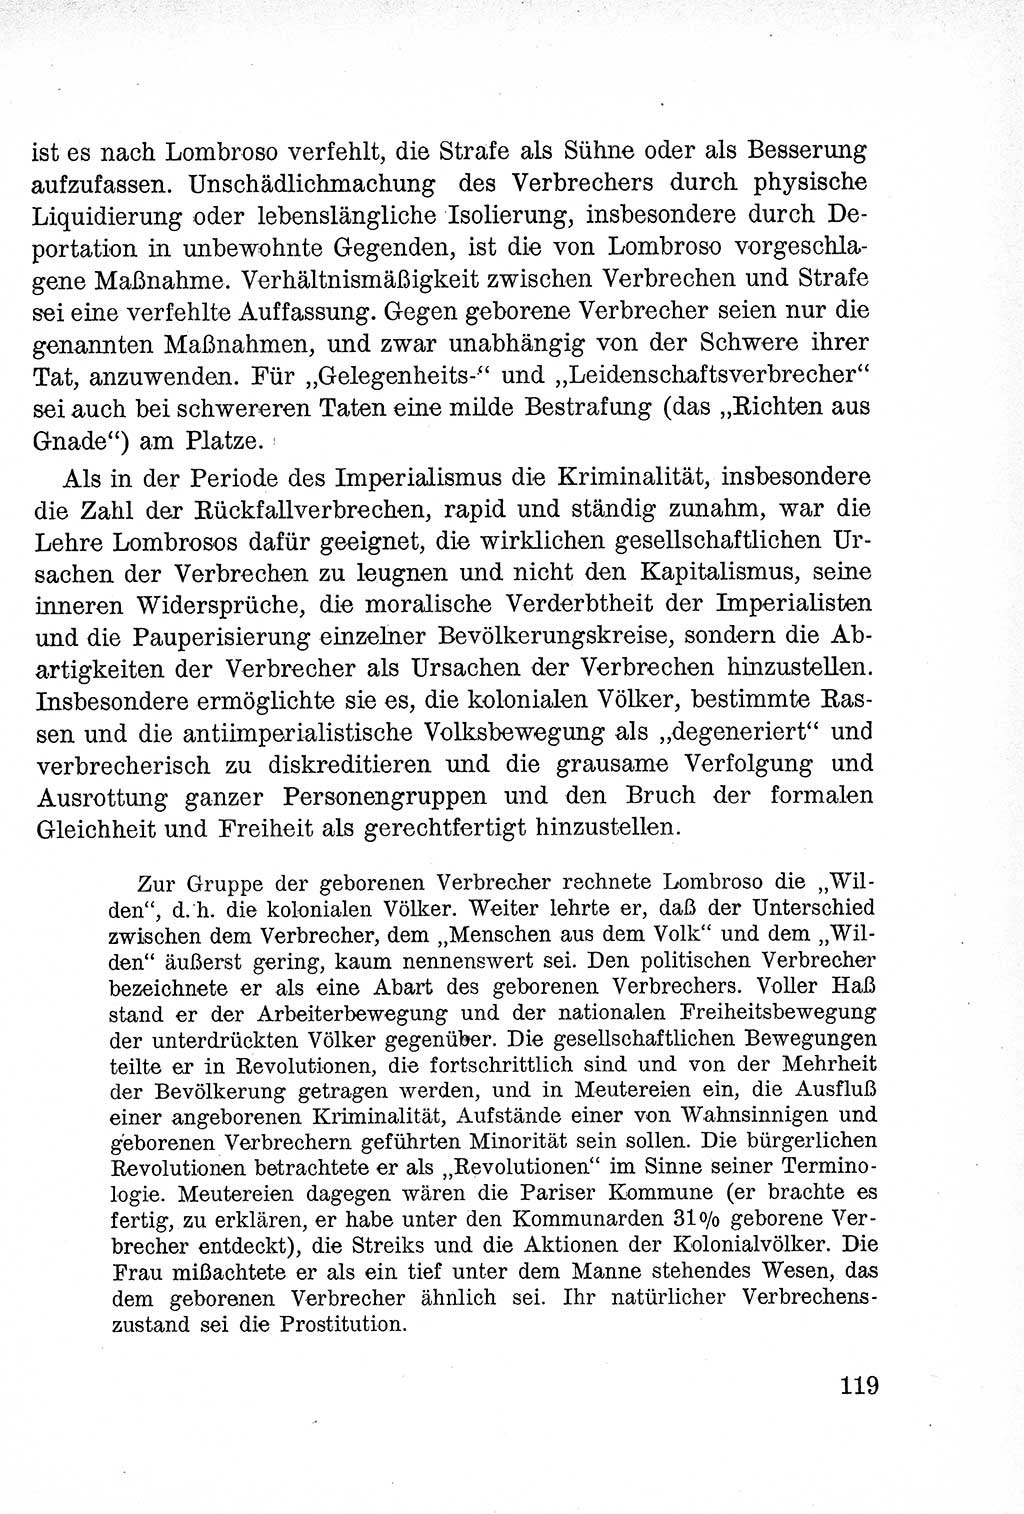 Lehrbuch des Strafrechts der Deutschen Demokratischen Republik (DDR), Allgemeiner Teil 1957, Seite 119 (Lb. Strafr. DDR AT 1957, S. 119)